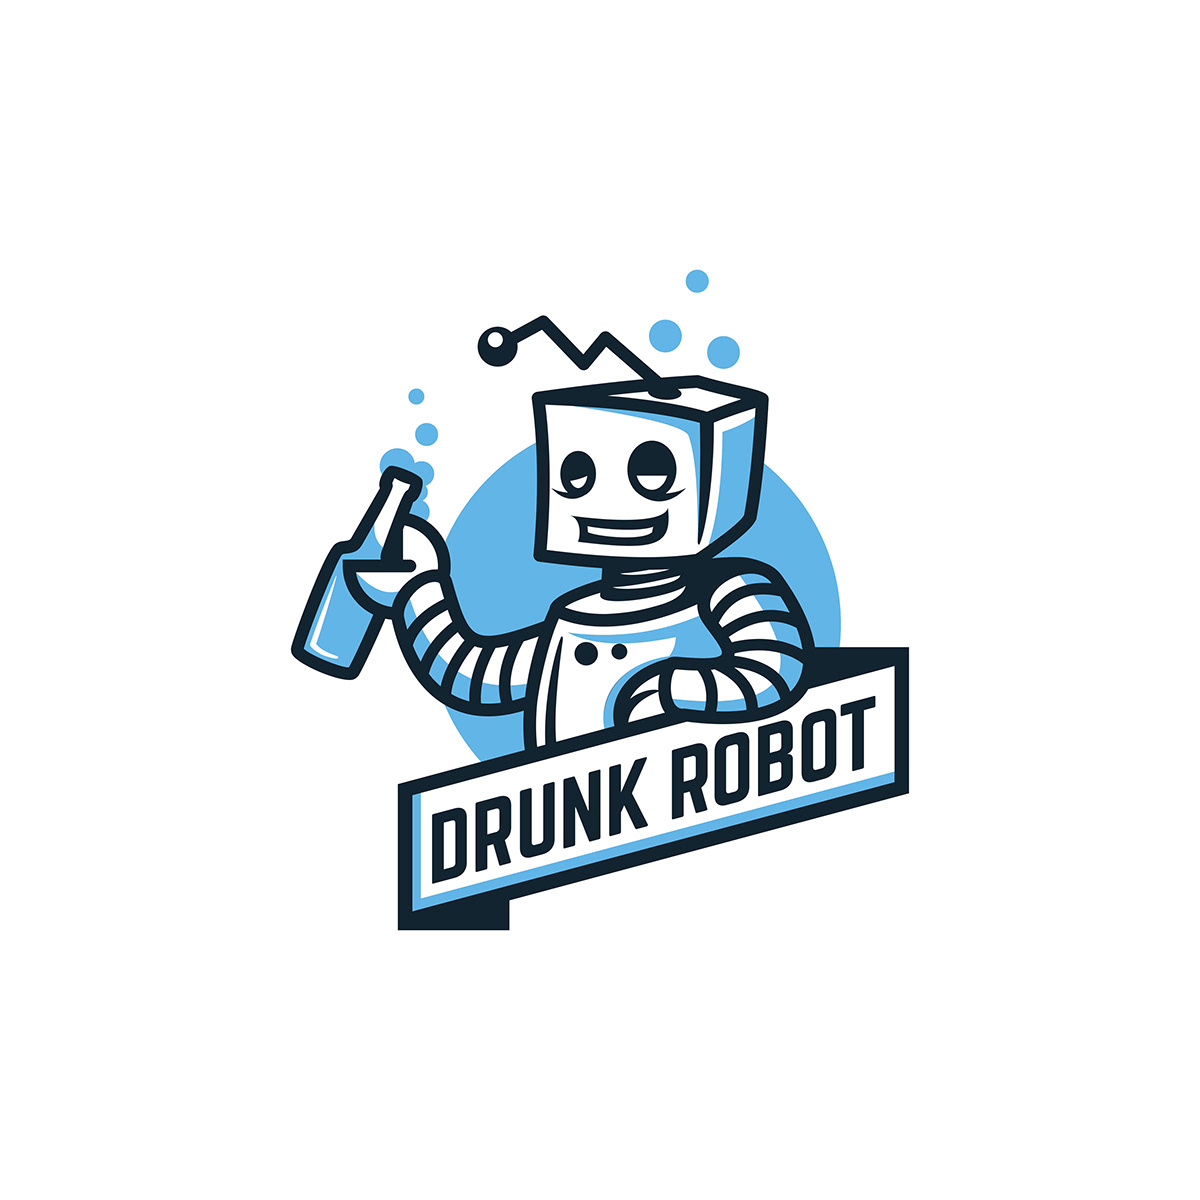 robot app youtube videogame Games cool funny drunk drunken metal